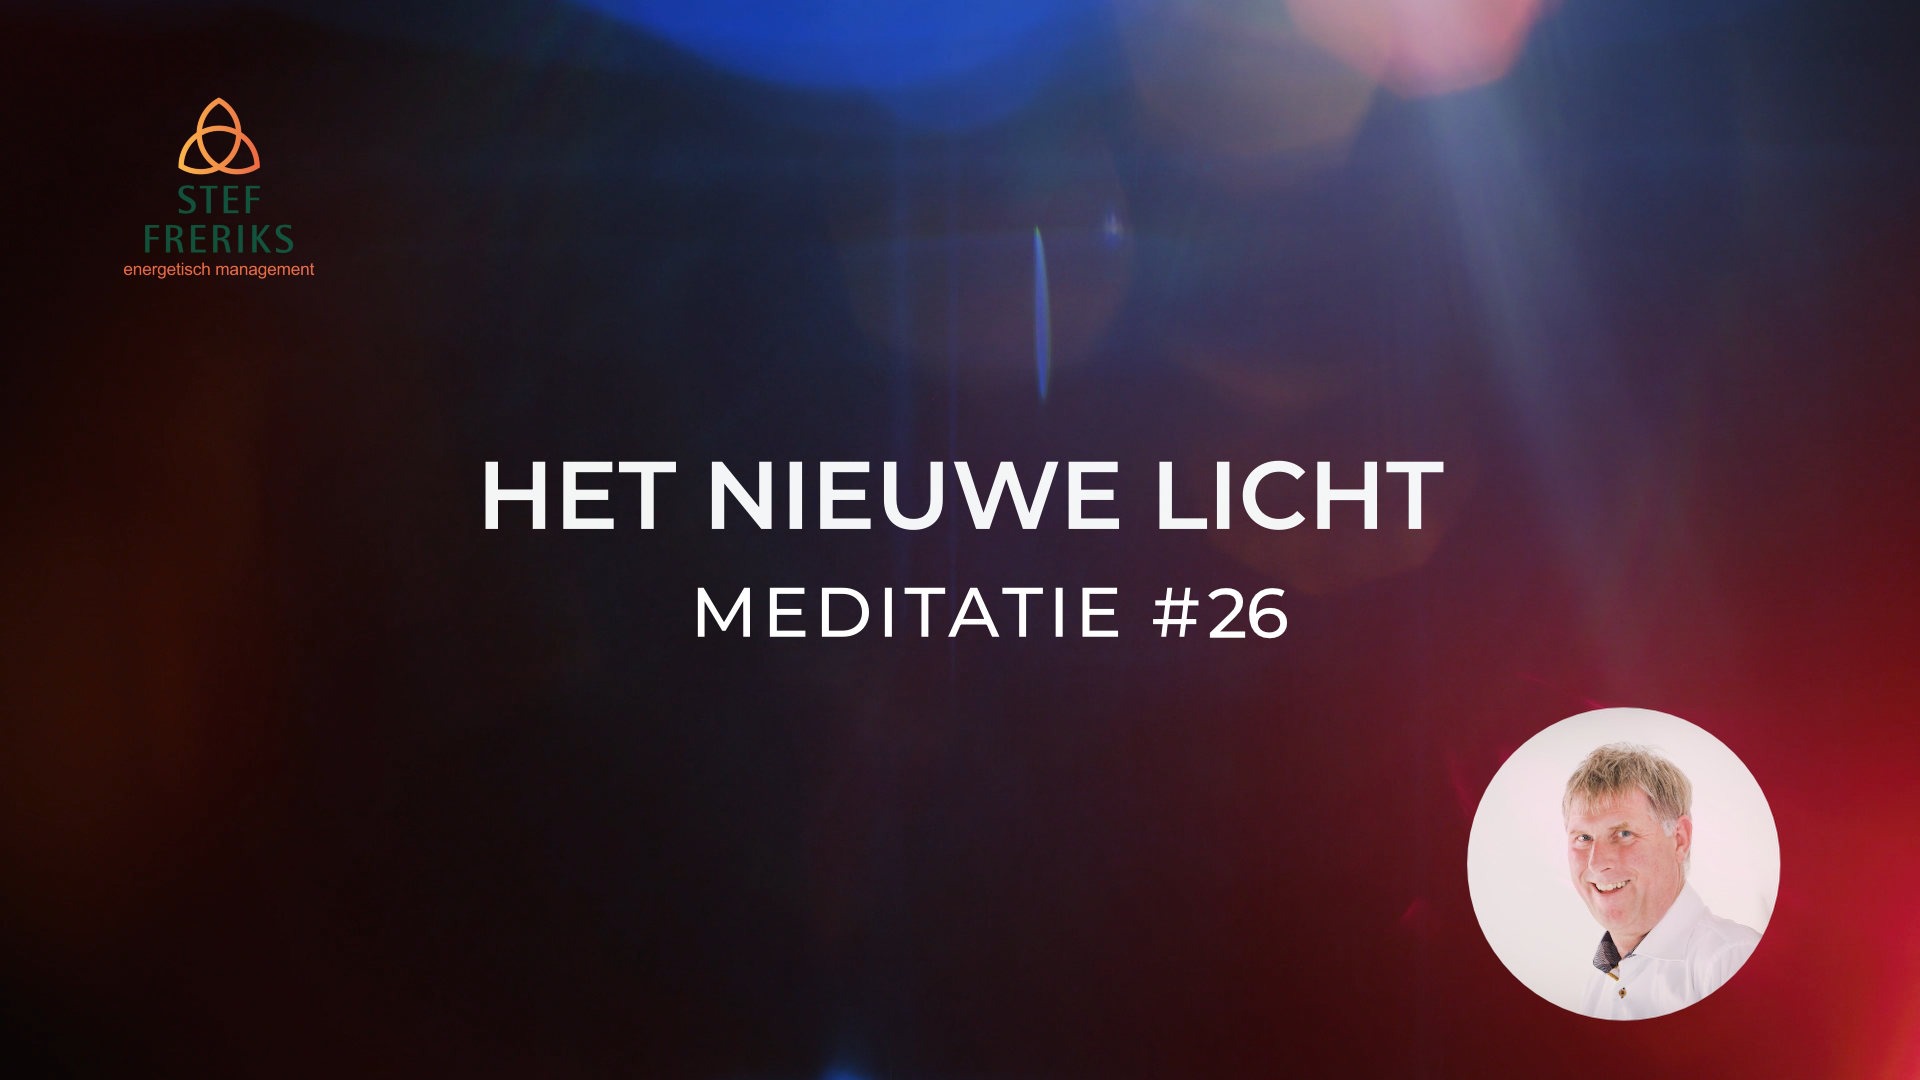 Meditatie #26 uit de serie Het Nieuwe Licht: De bron als krachtcentrum